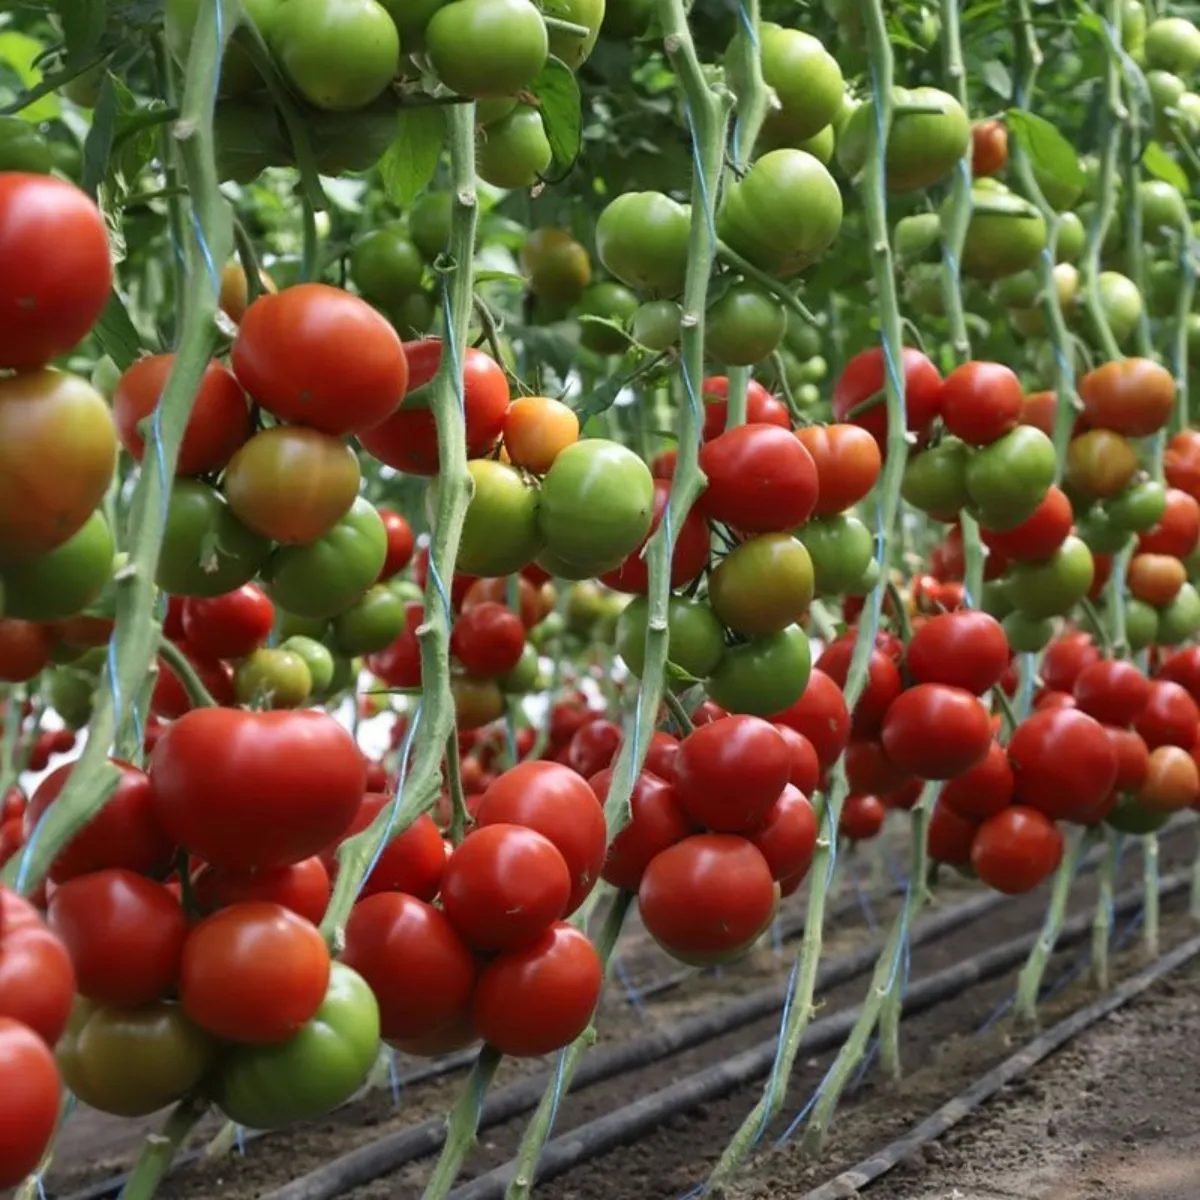 comment faire pour que les tomates murissent plus vite pieds auxtomates vertes etrouges